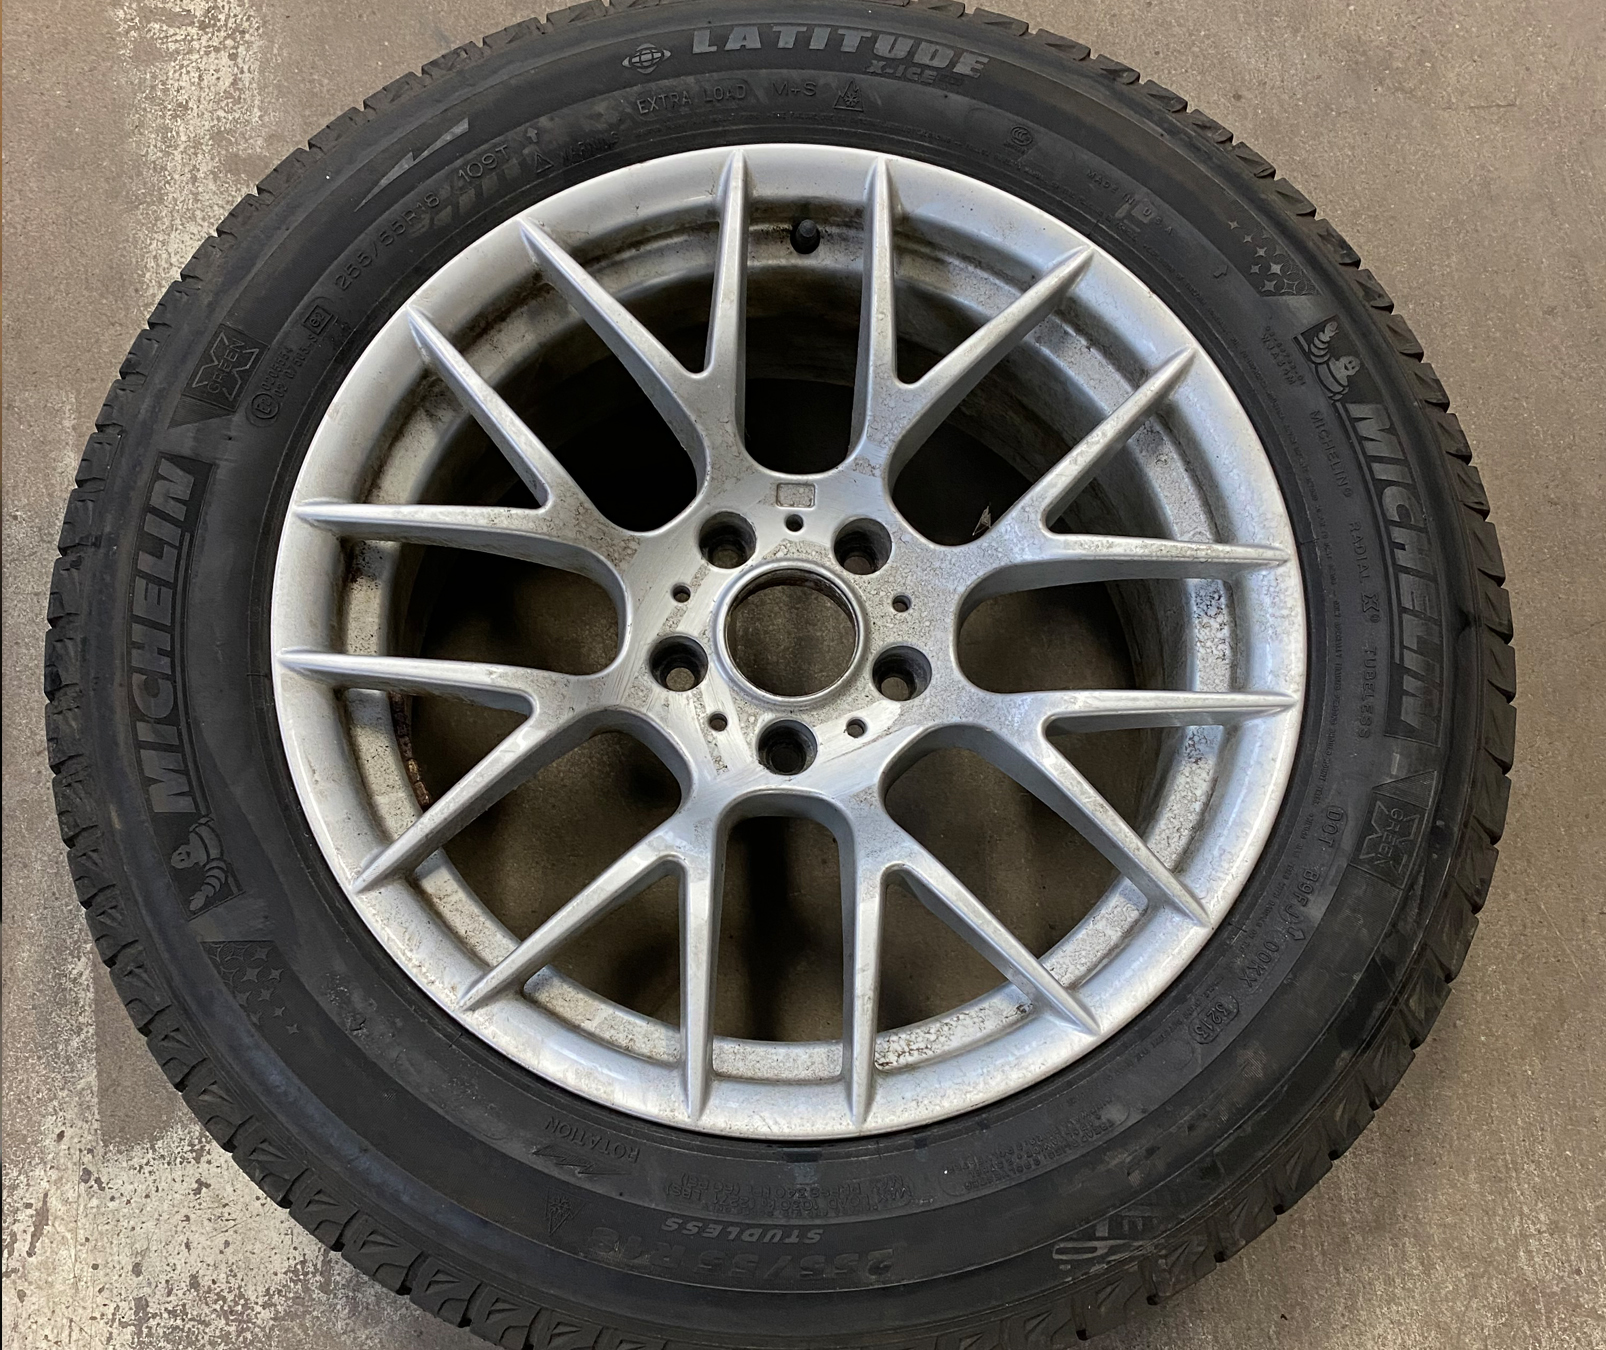 BMW Wheels & 255/55R18 Michelin Winters: